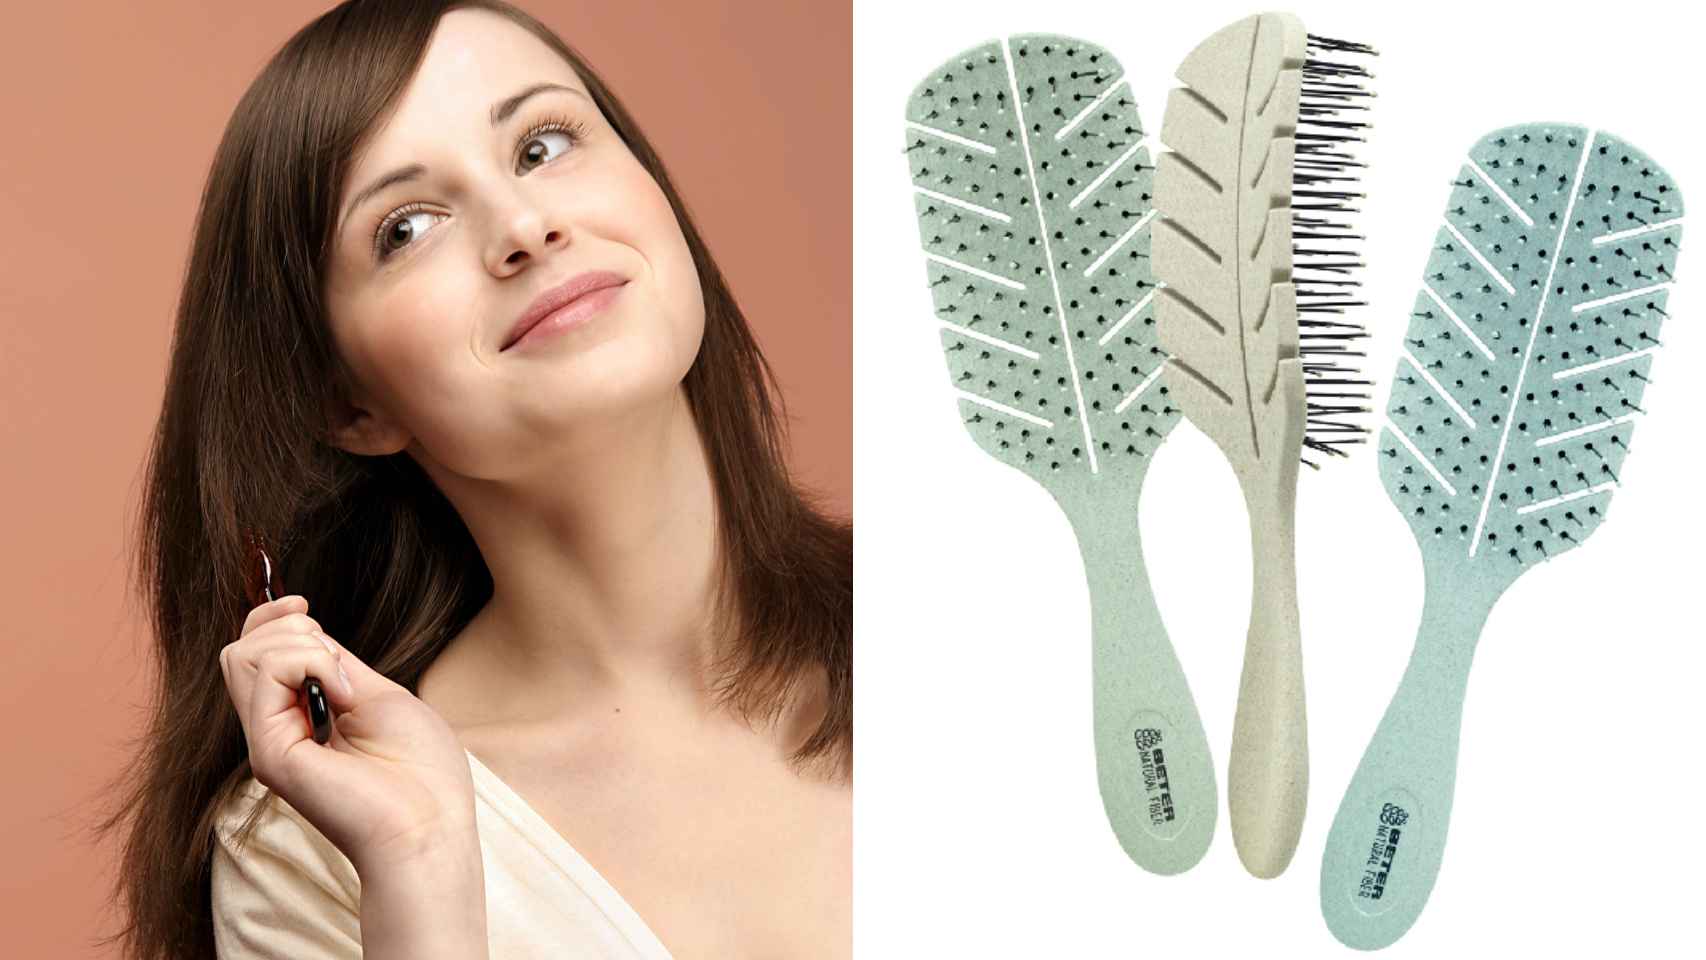 El cepillo que mejor cuida tu cabello existe y cuesta menos de